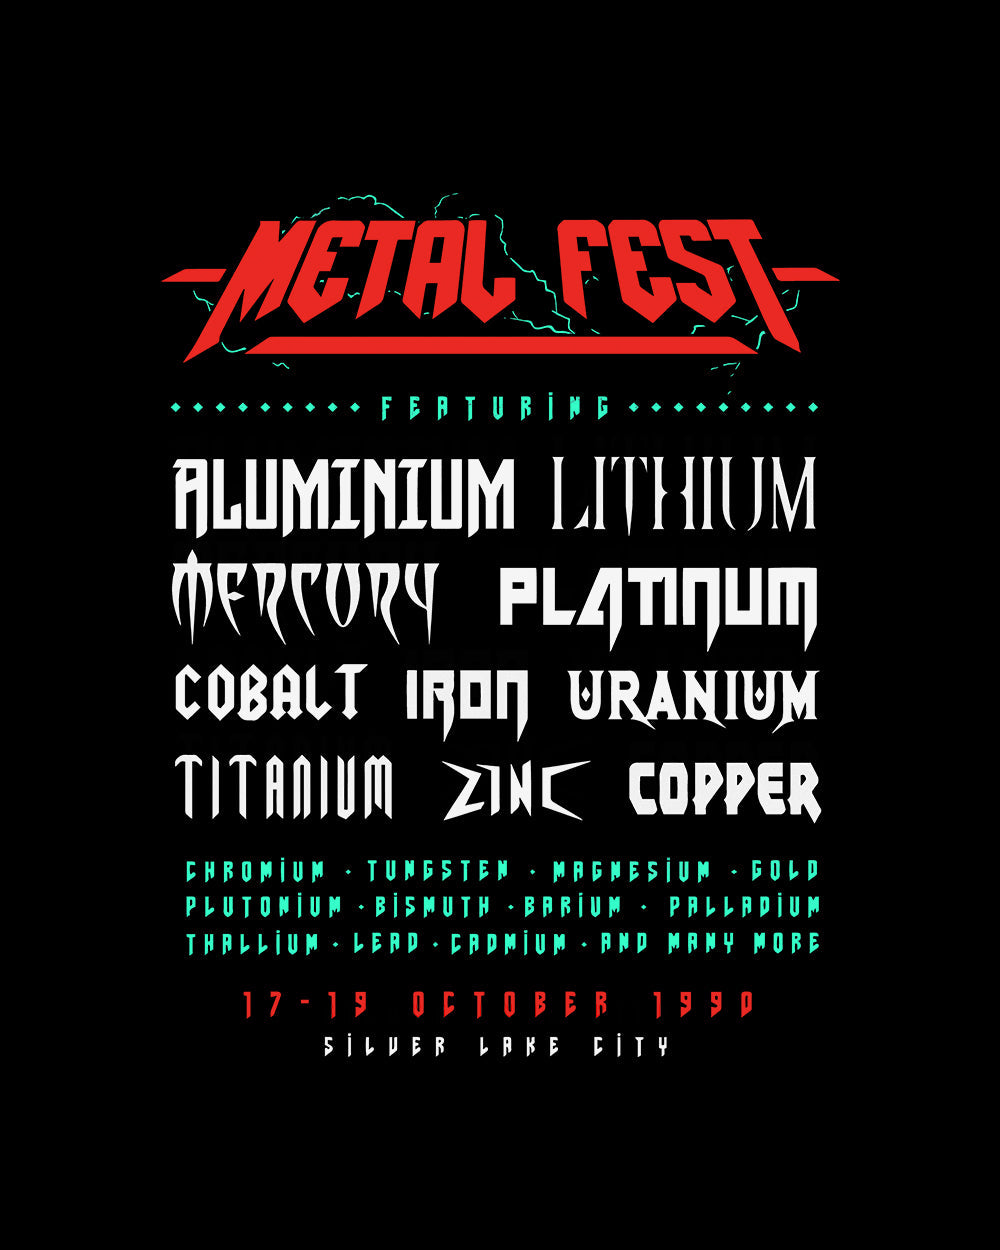 Metal Fest Tank Australia Online #colour_black